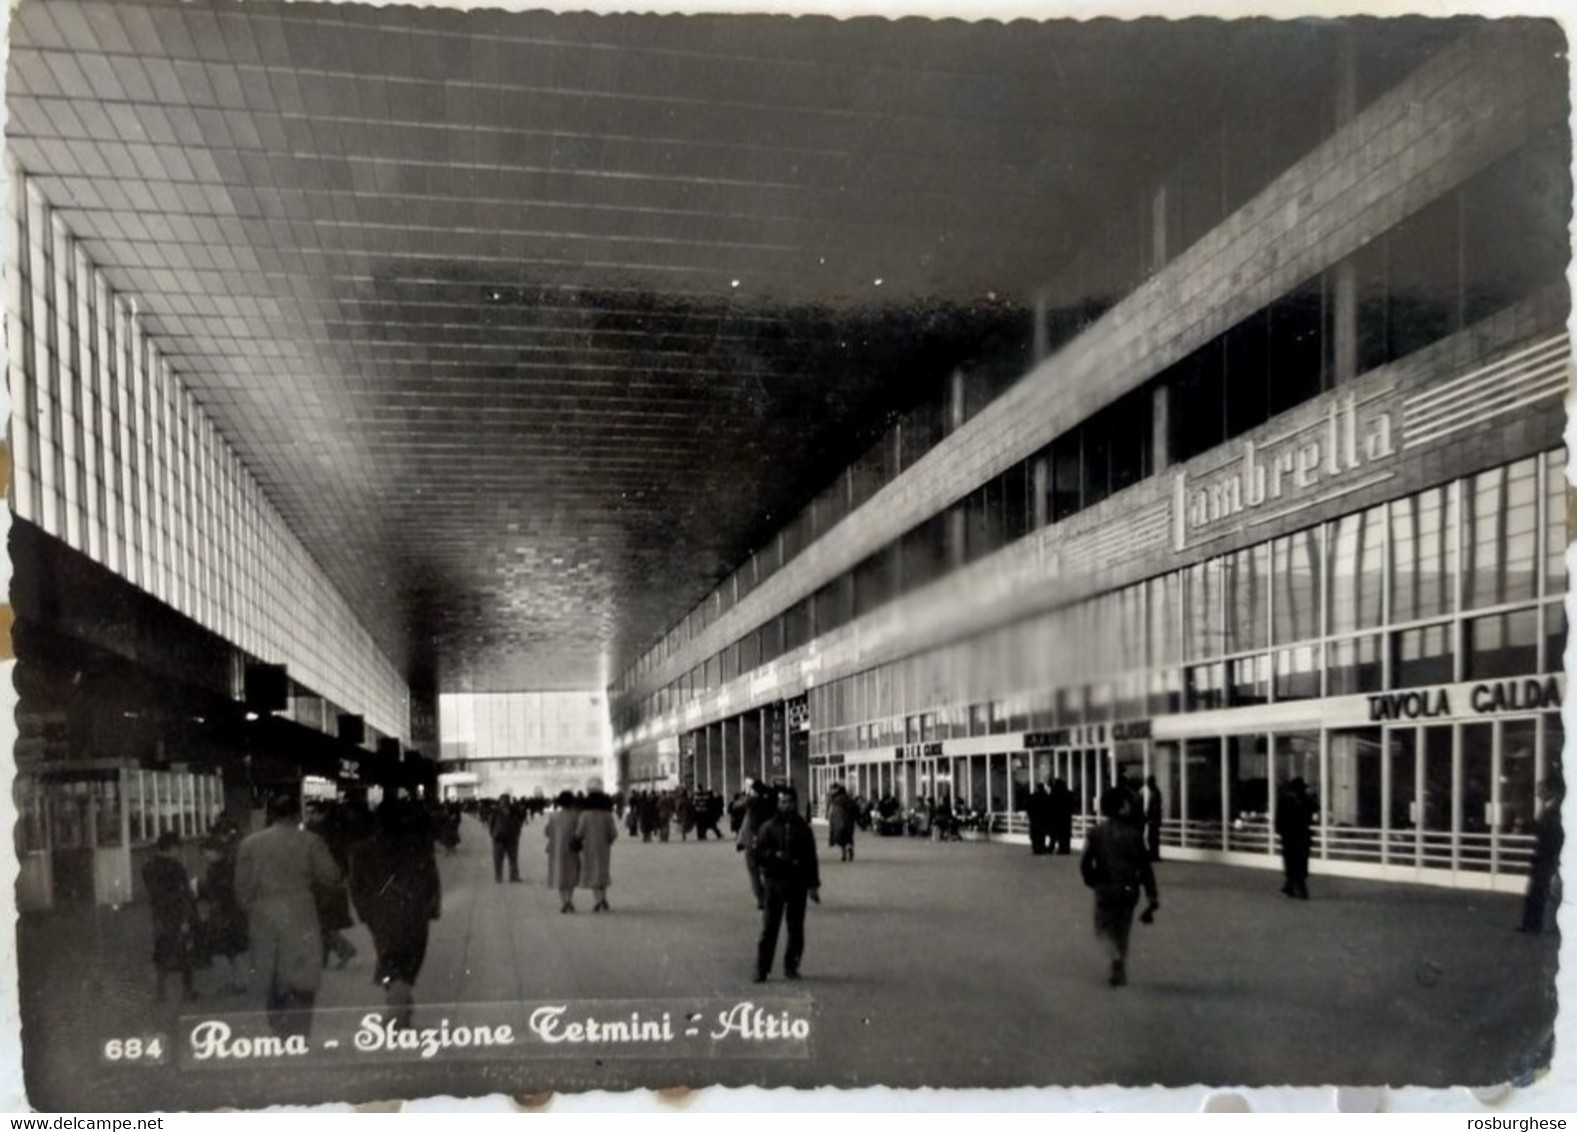 Cartolina Roma, Stazione Termini (15) FG VG 1955 - Stazione Termini